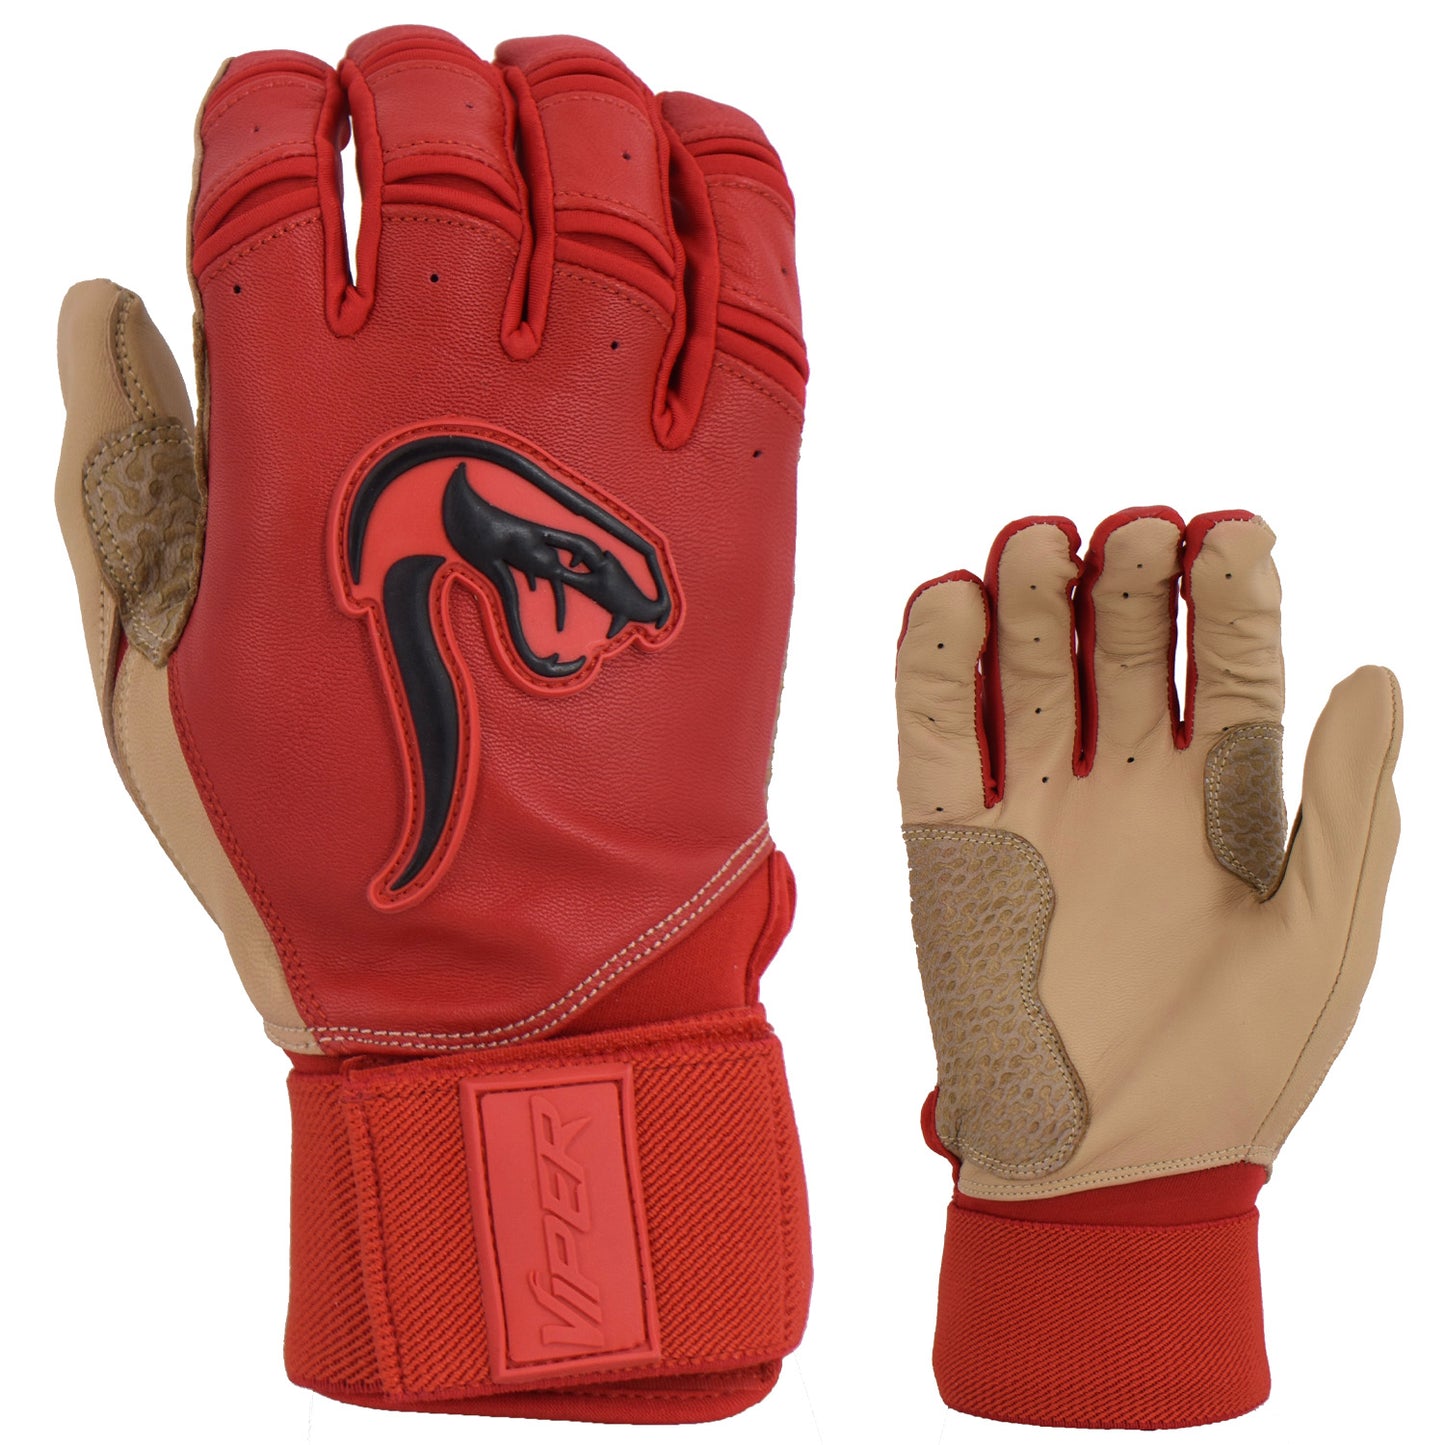 Viper Grindstone Long Cuff Batting Glove - Red/Tan